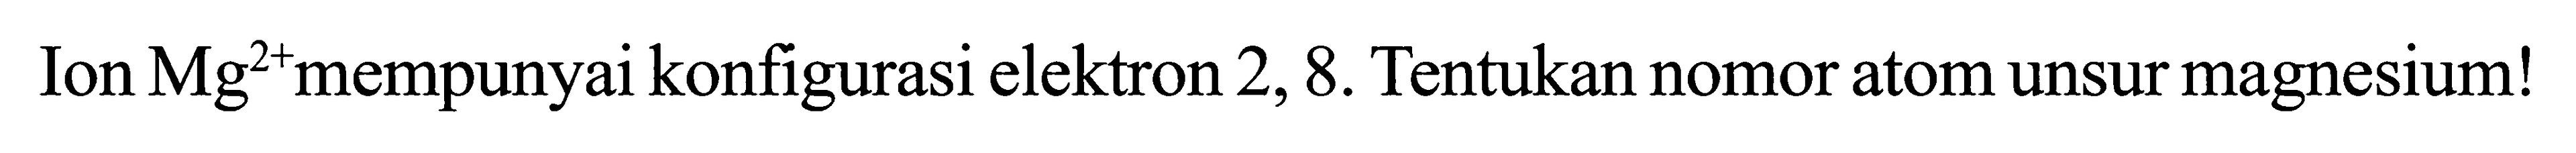 Ion Mg^(2+) mempunyai konfigurasi elektron 2, 8. Tentukan nomor atom unsur magnesium!